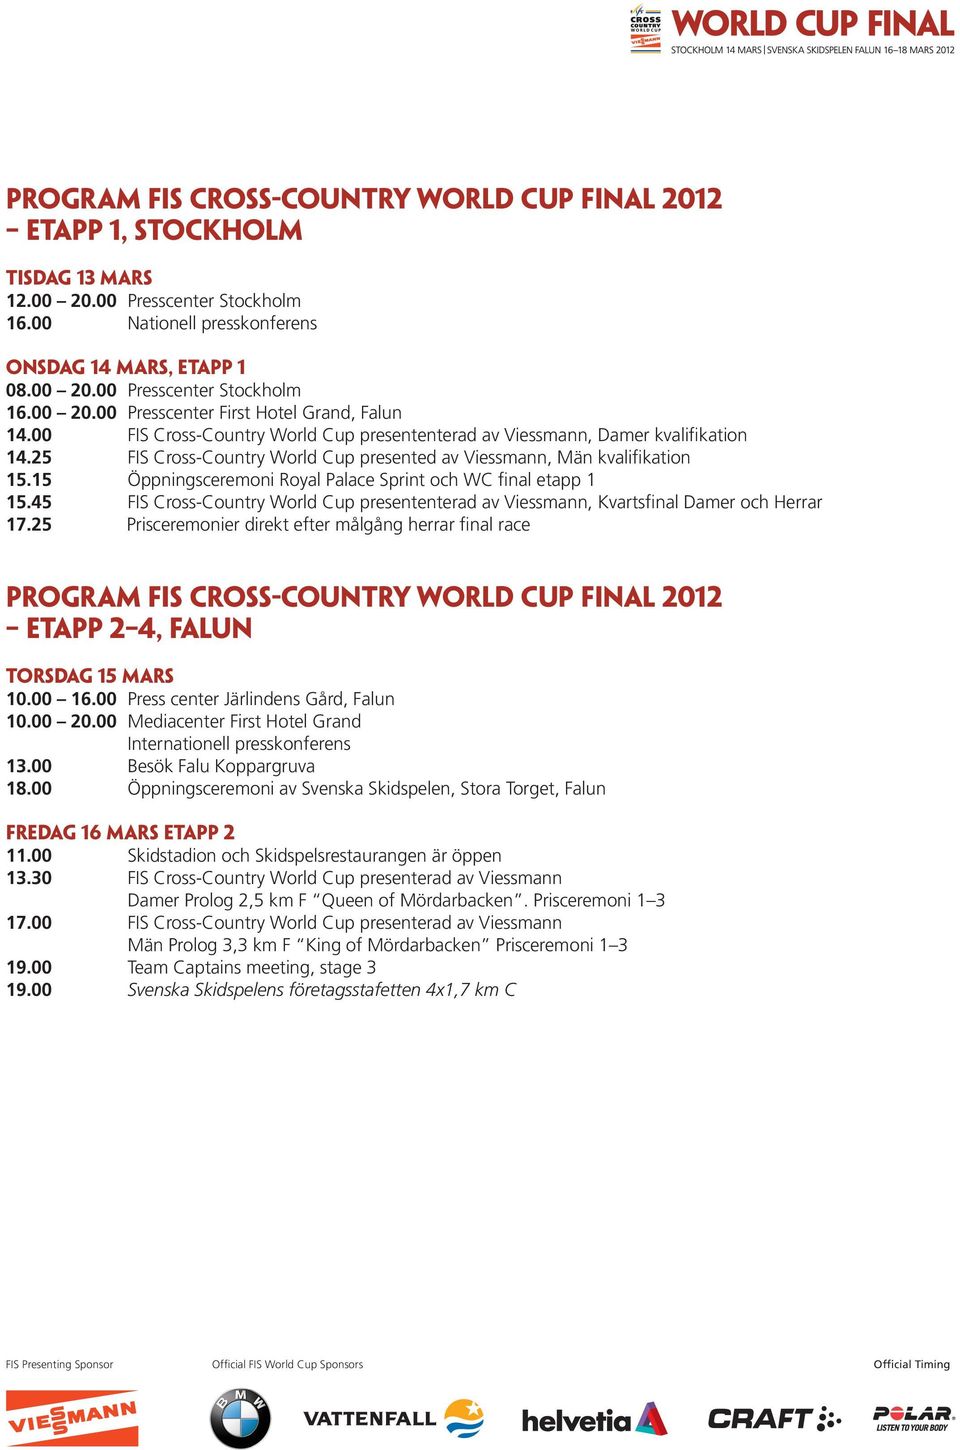 15 Öppningsceremoni Royal Palace Sprint och WC final etapp 1 15.45 FIS Cross-Country World Cup presententerad av Viessmann, Kvartsfinal Damer och Herrar 17.